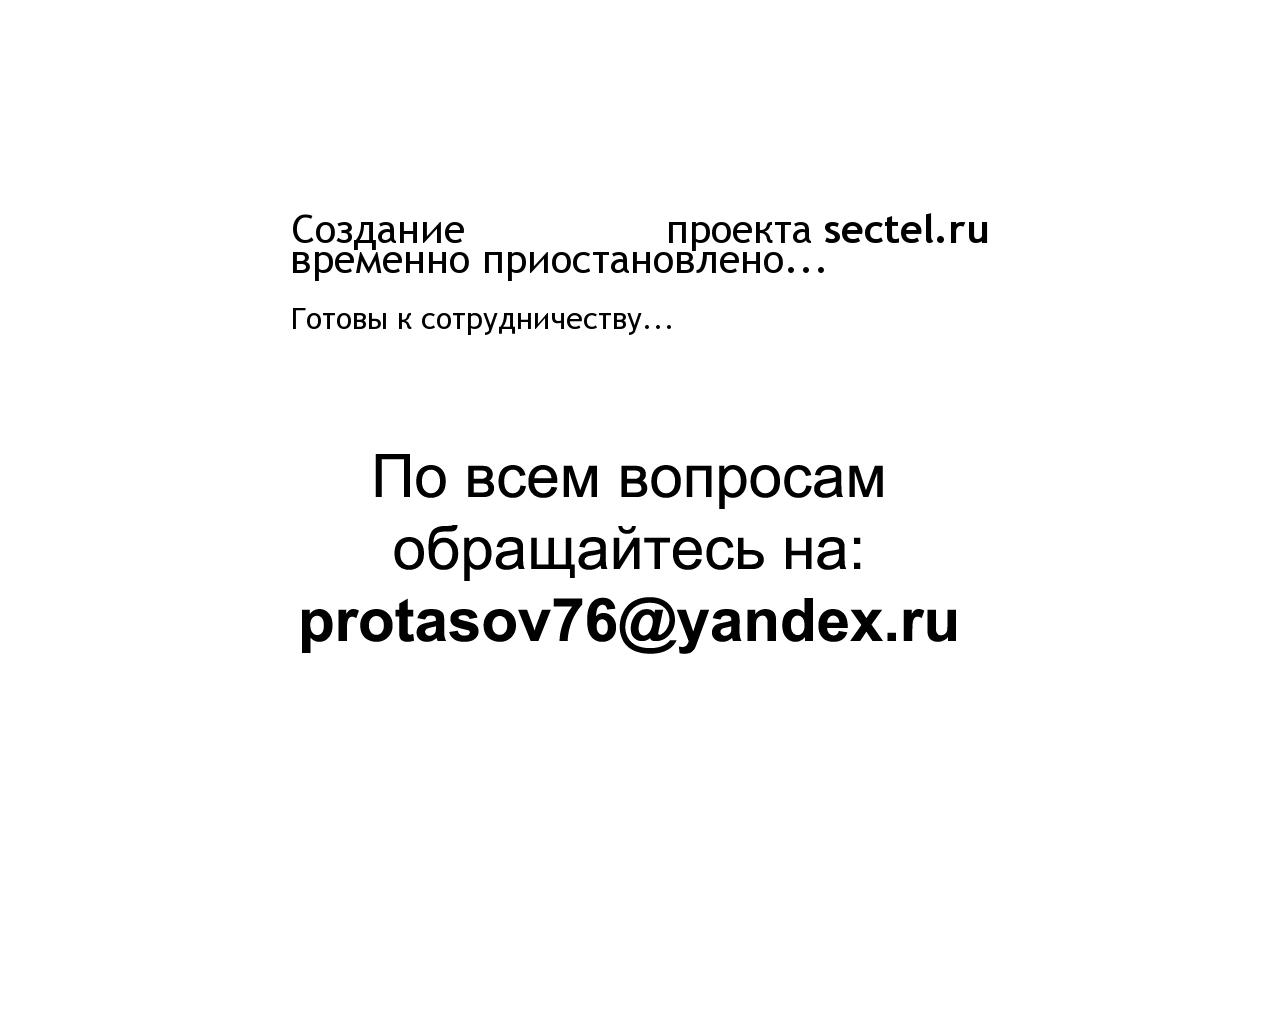 Изображение сайта sectel.ru в разрешении 1280x1024